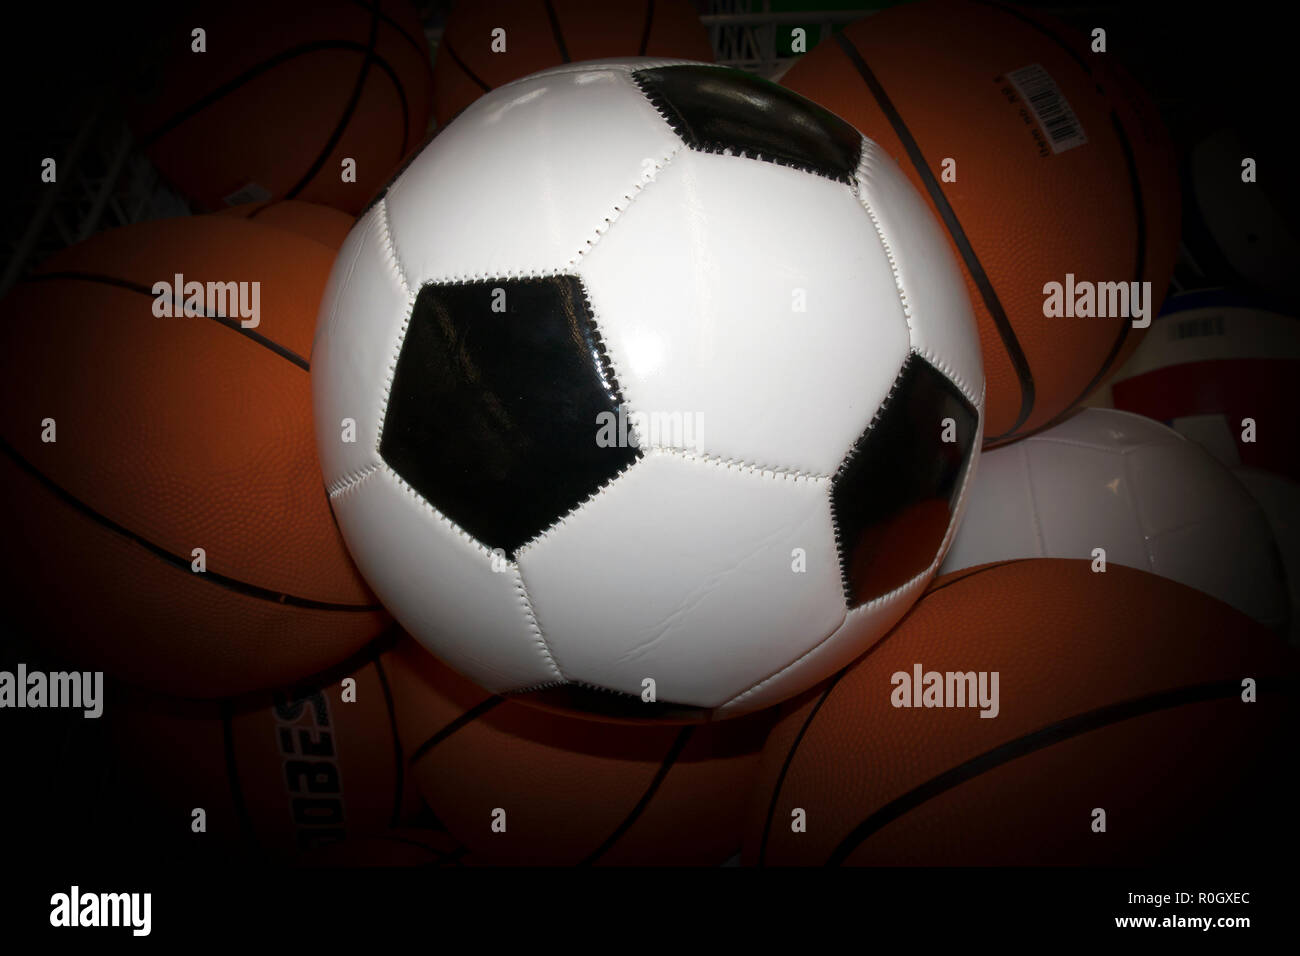 Bianco sfera di calcio con gli esagoni neri contro le sfere di colore arancione con bollino oscurato Foto Stock